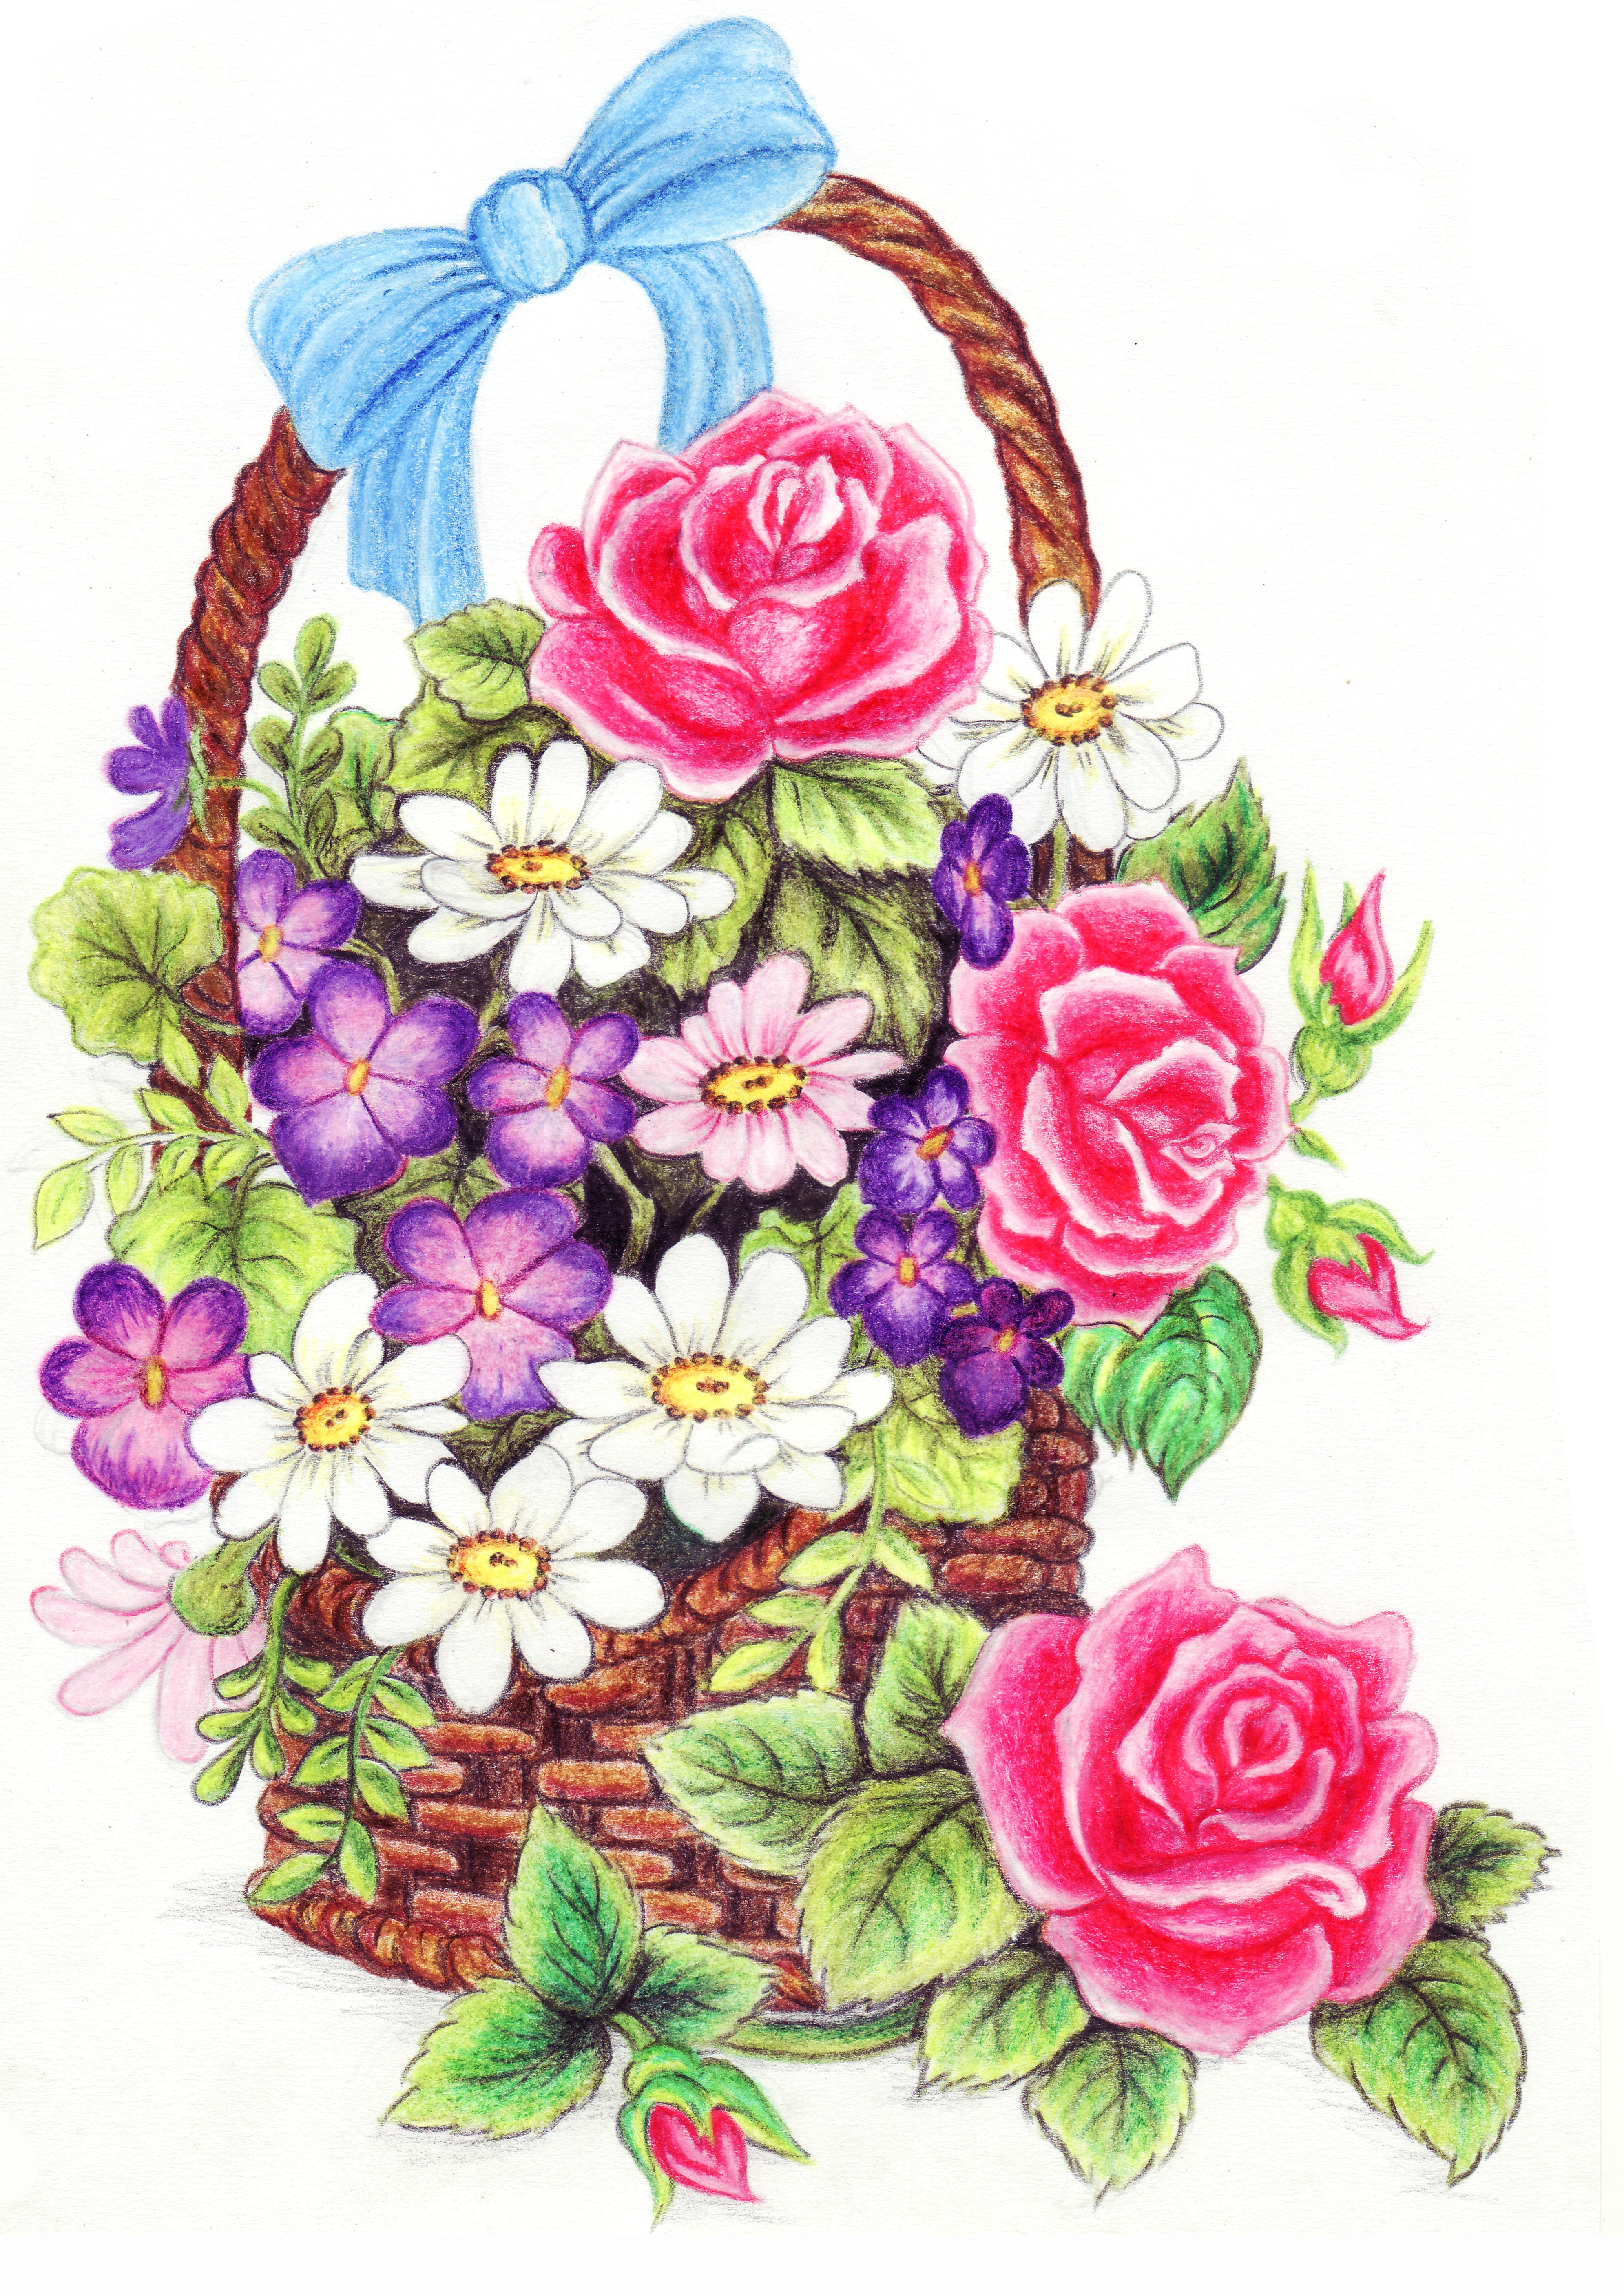 flower basket by lianne29annika on DeviantArt